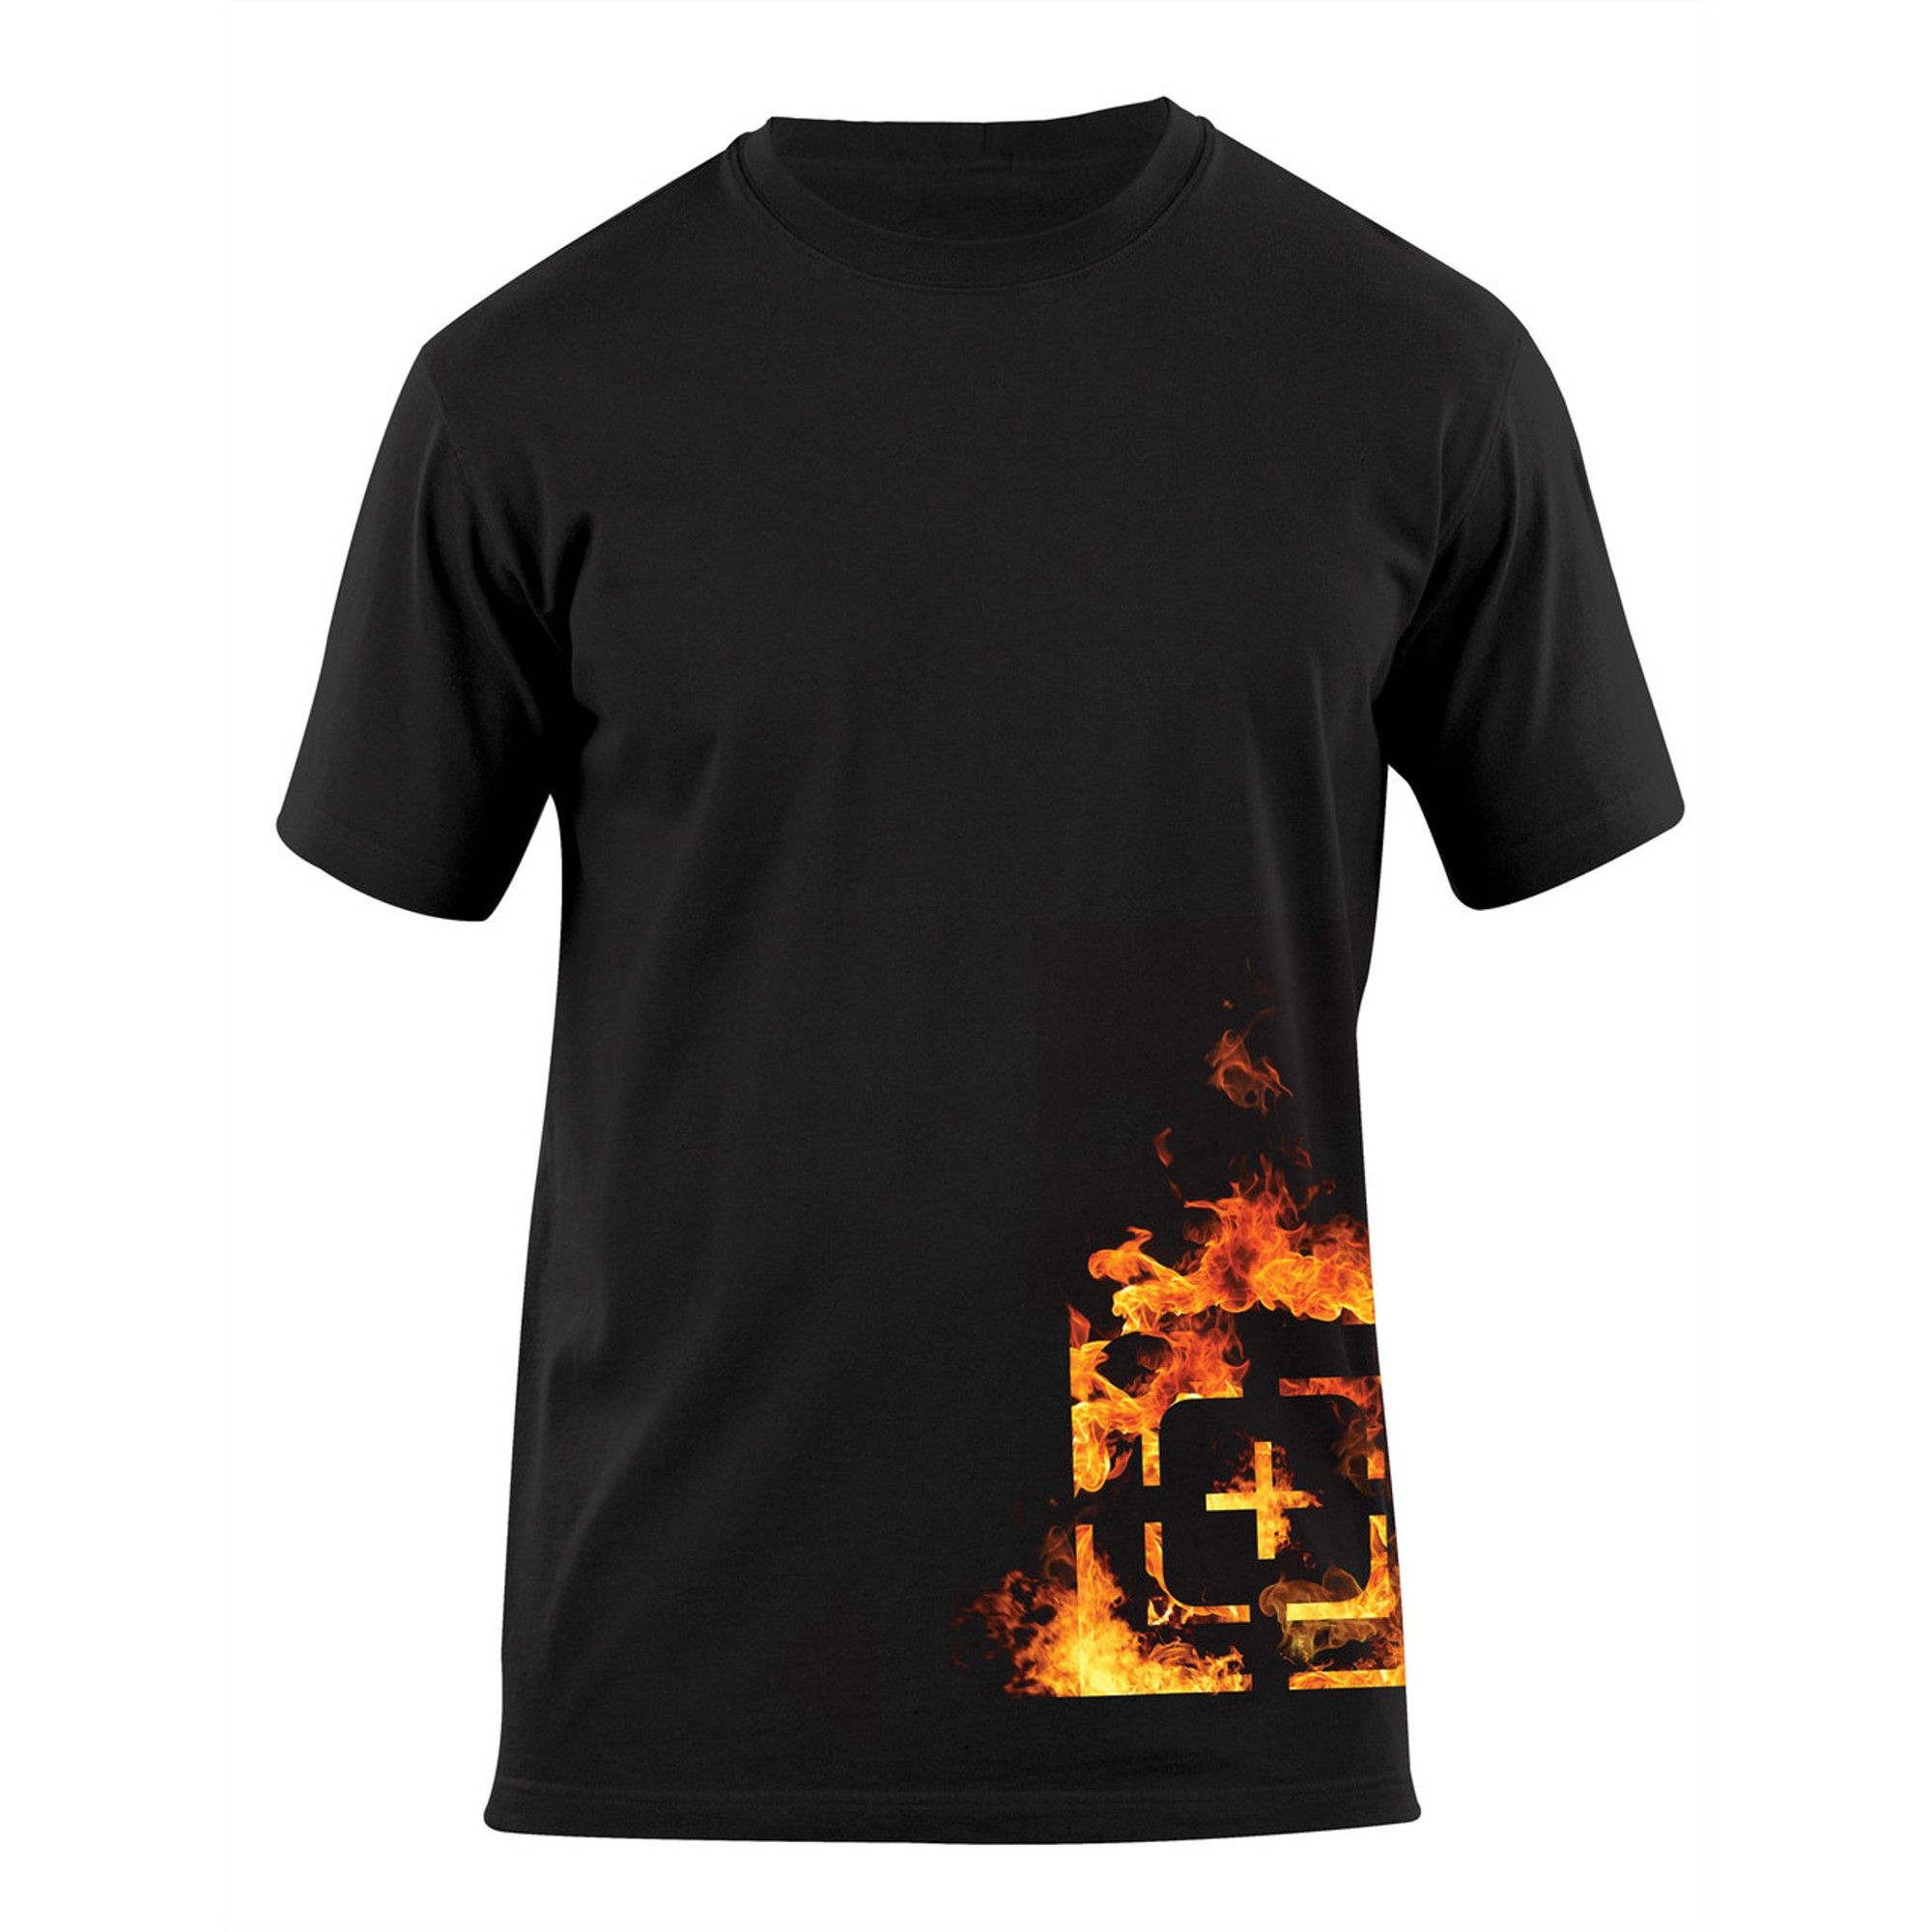 5.11 Fire Scope T-Shirt